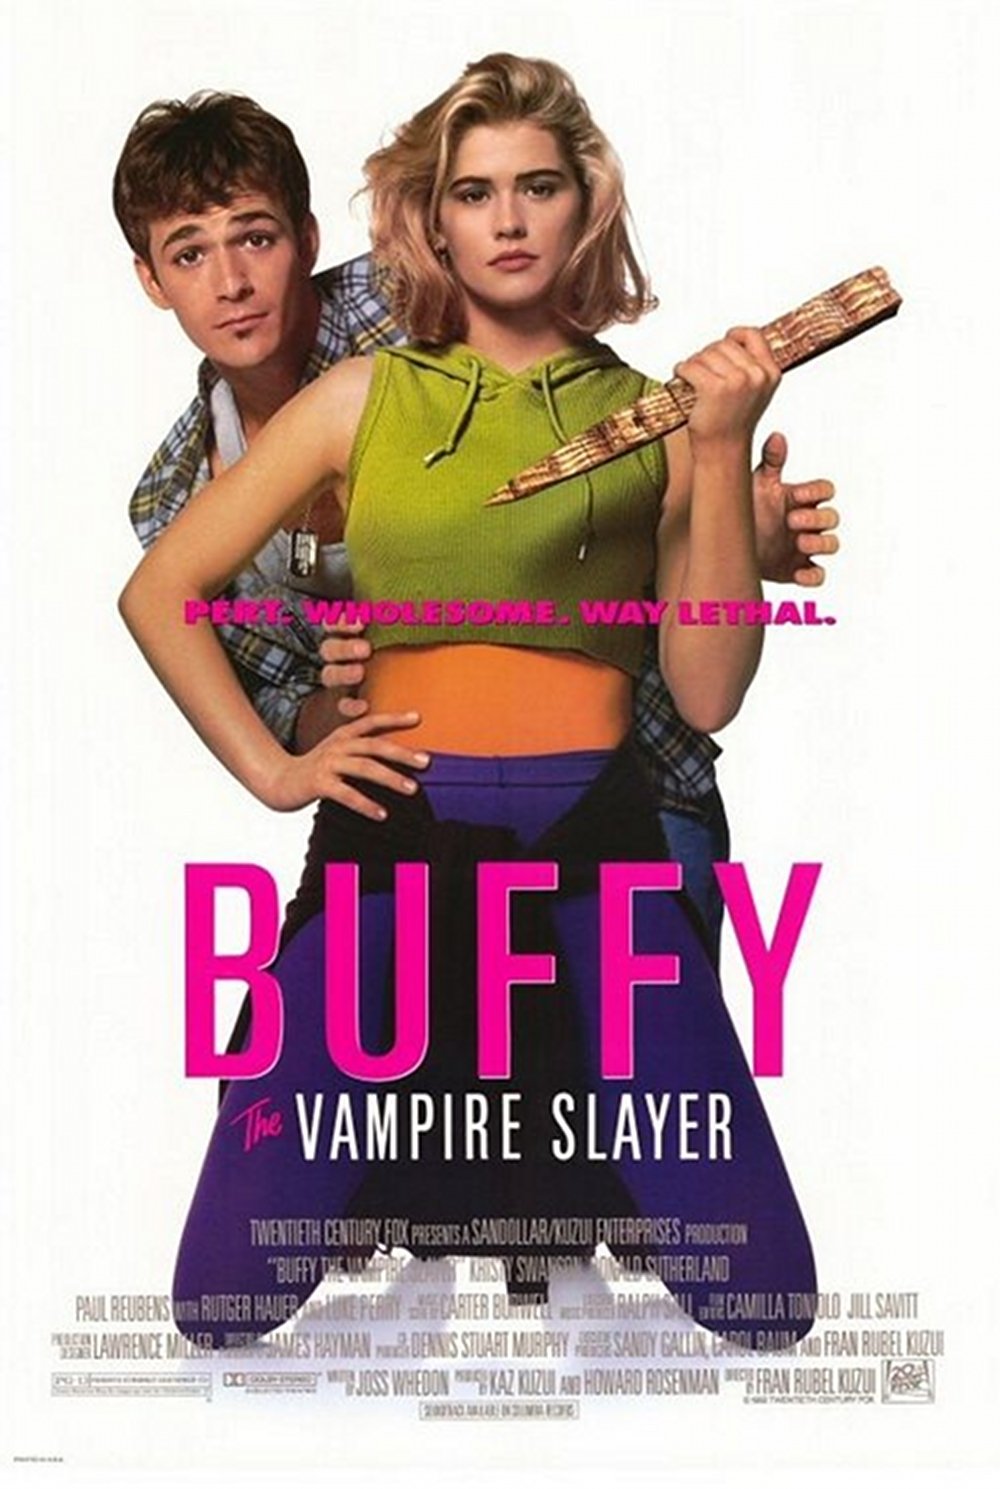 ბაფი ვამპირების გამანადგურებელი / Buffy The Vampire Slayer ქართულად